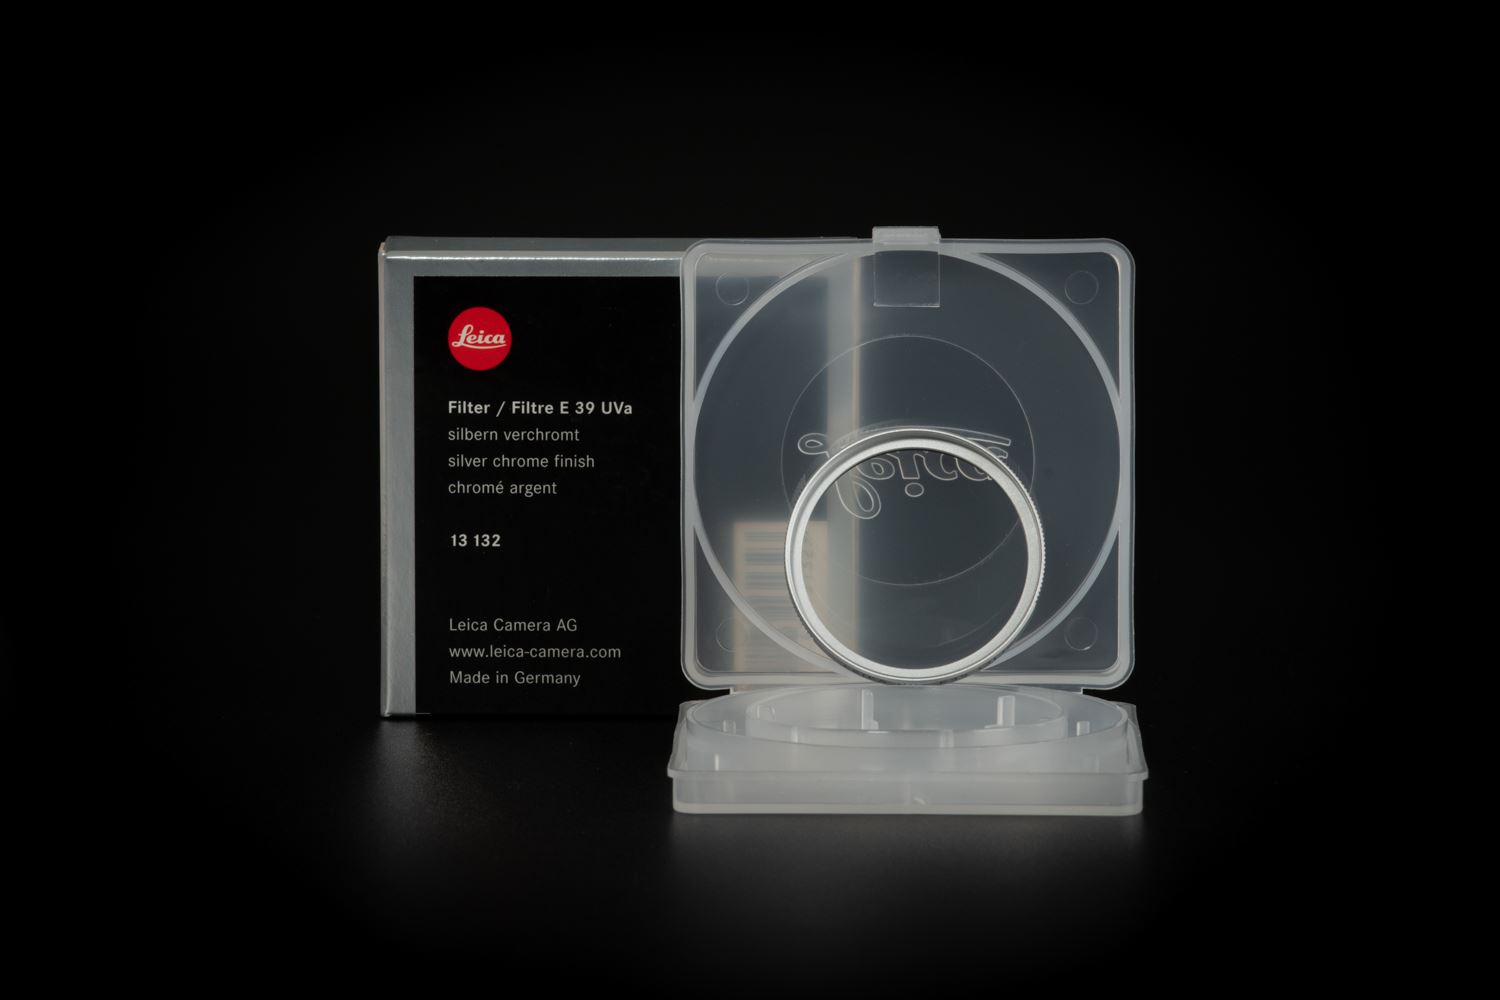 Picture of Leica Filter E39 Uva Silver